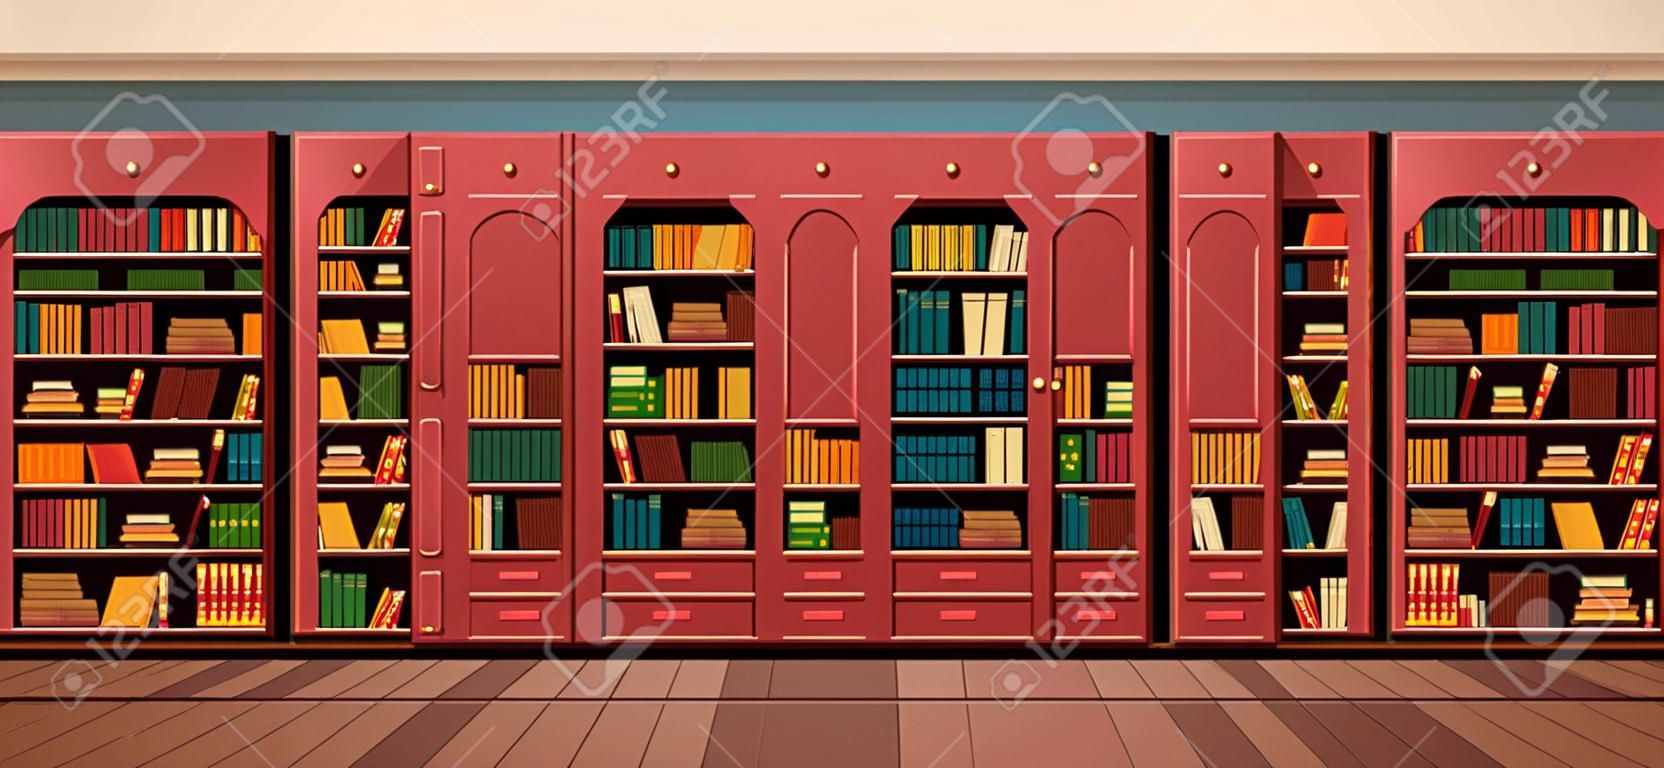 矢量图图书馆书架上的书架图书馆平面样式。